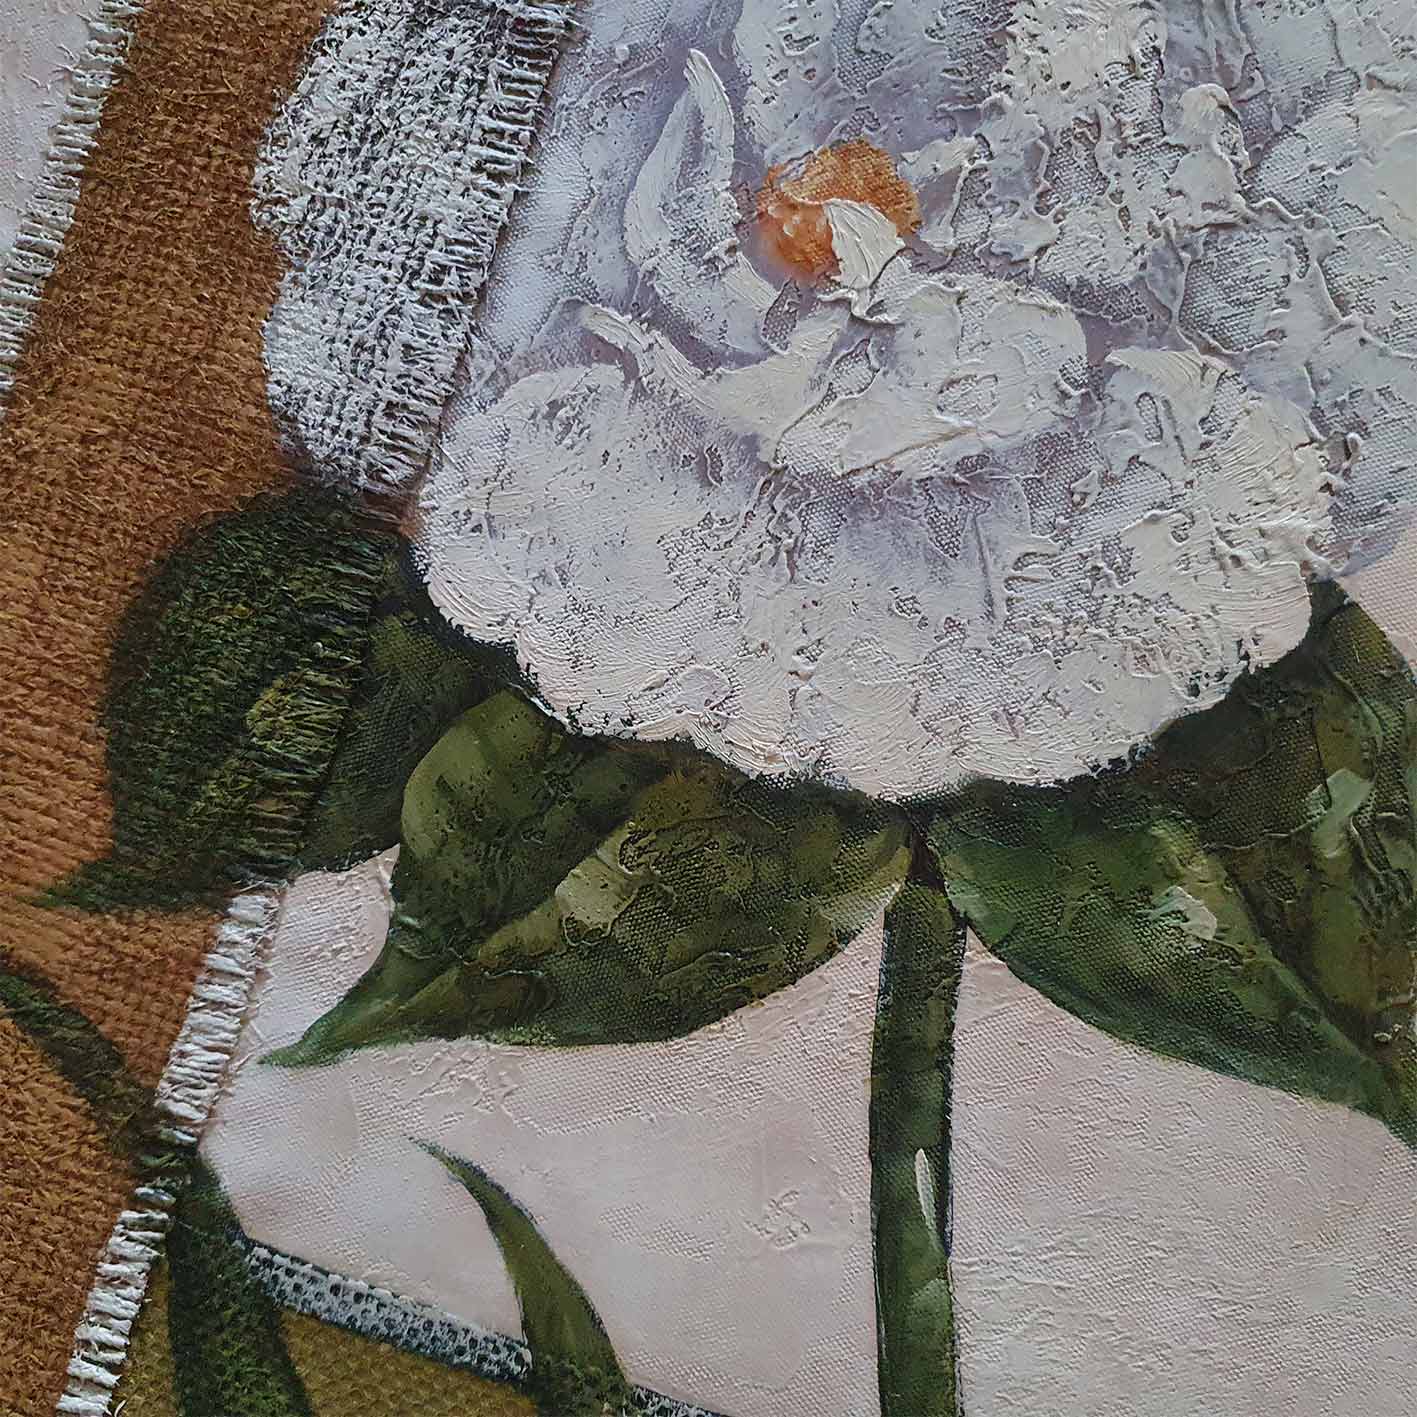 Sackblumen Diptychon Gemälde 50x60 cm [2 Stück]